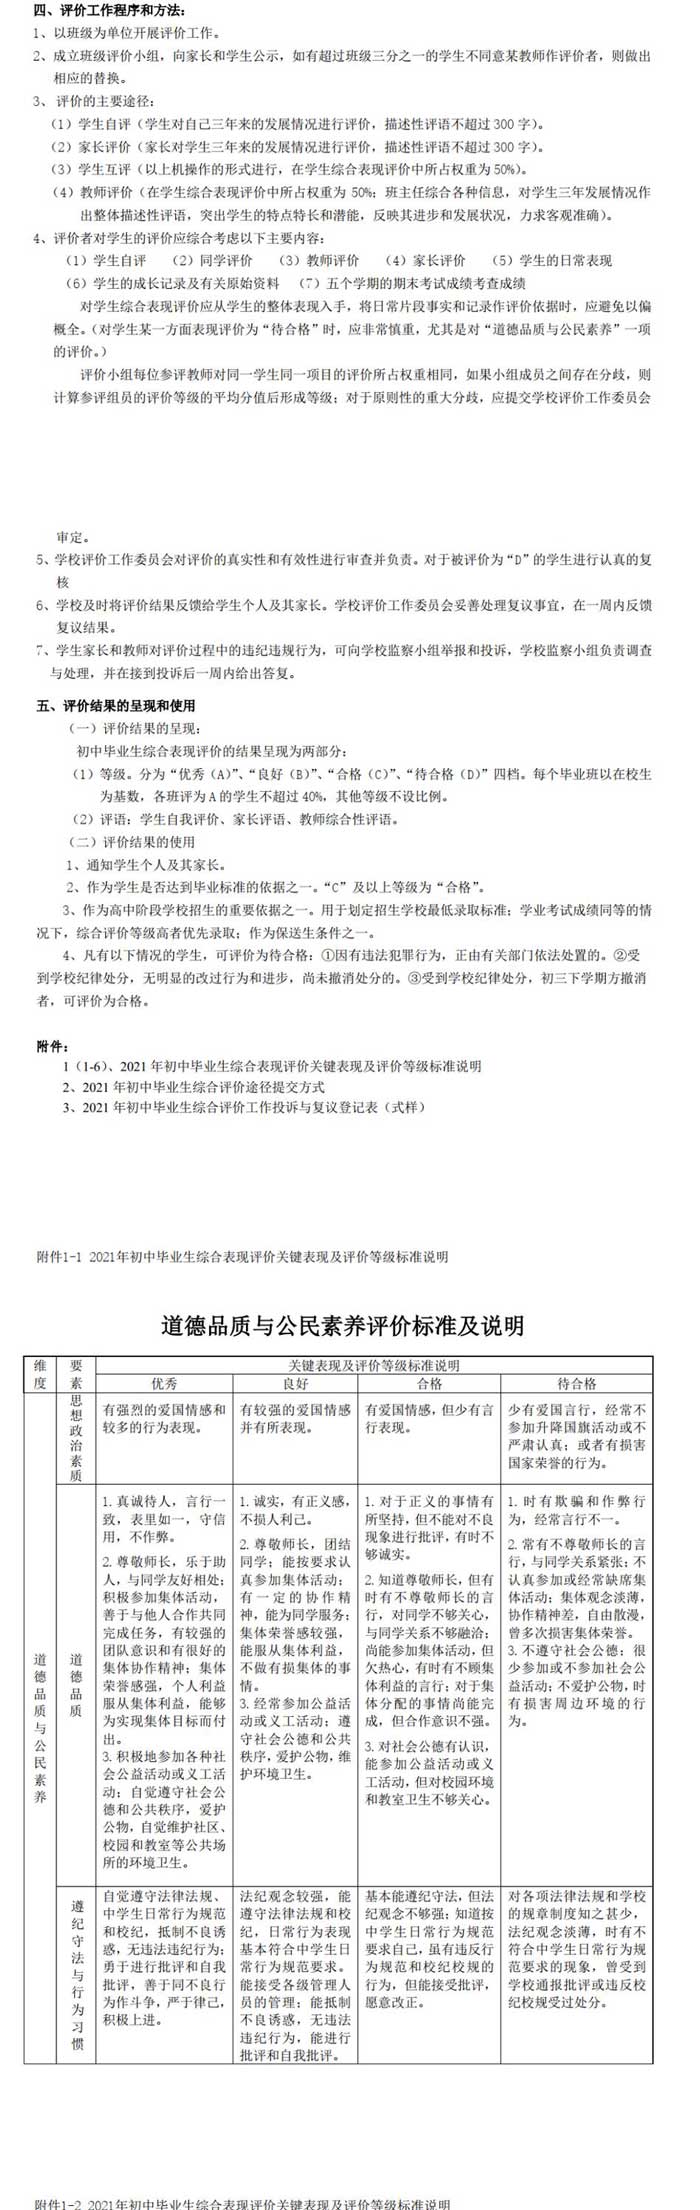 深圳实验学校初中部公布2021年初中毕业生综合表现评价实施方案